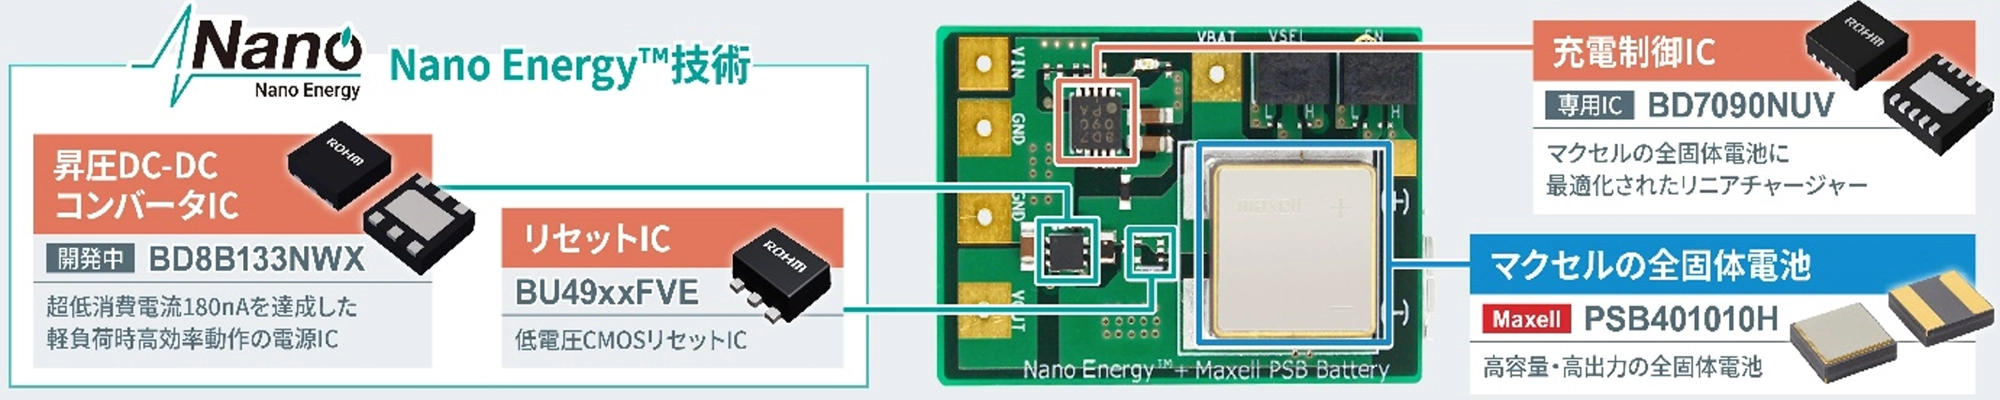 Nano Energy™技術